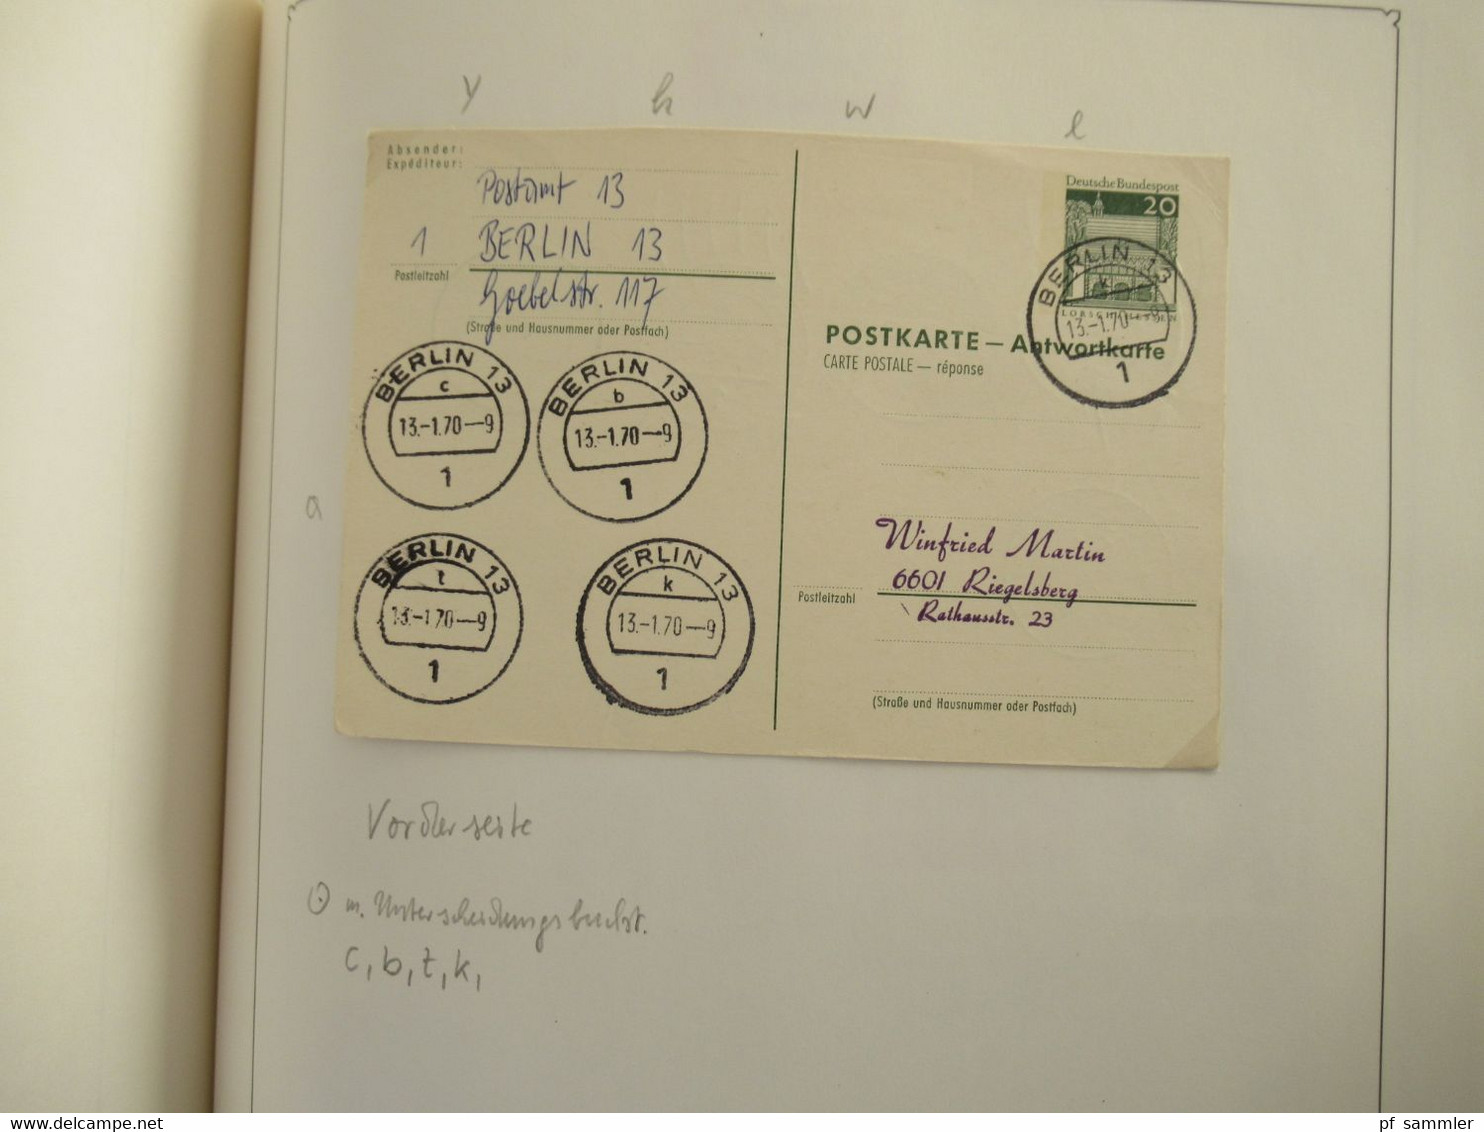 Spezial Slg. Berliner Postämter ab 1962 mit etlichen Briefstücken und auch Belegen! Interessanter Stöberposten!!